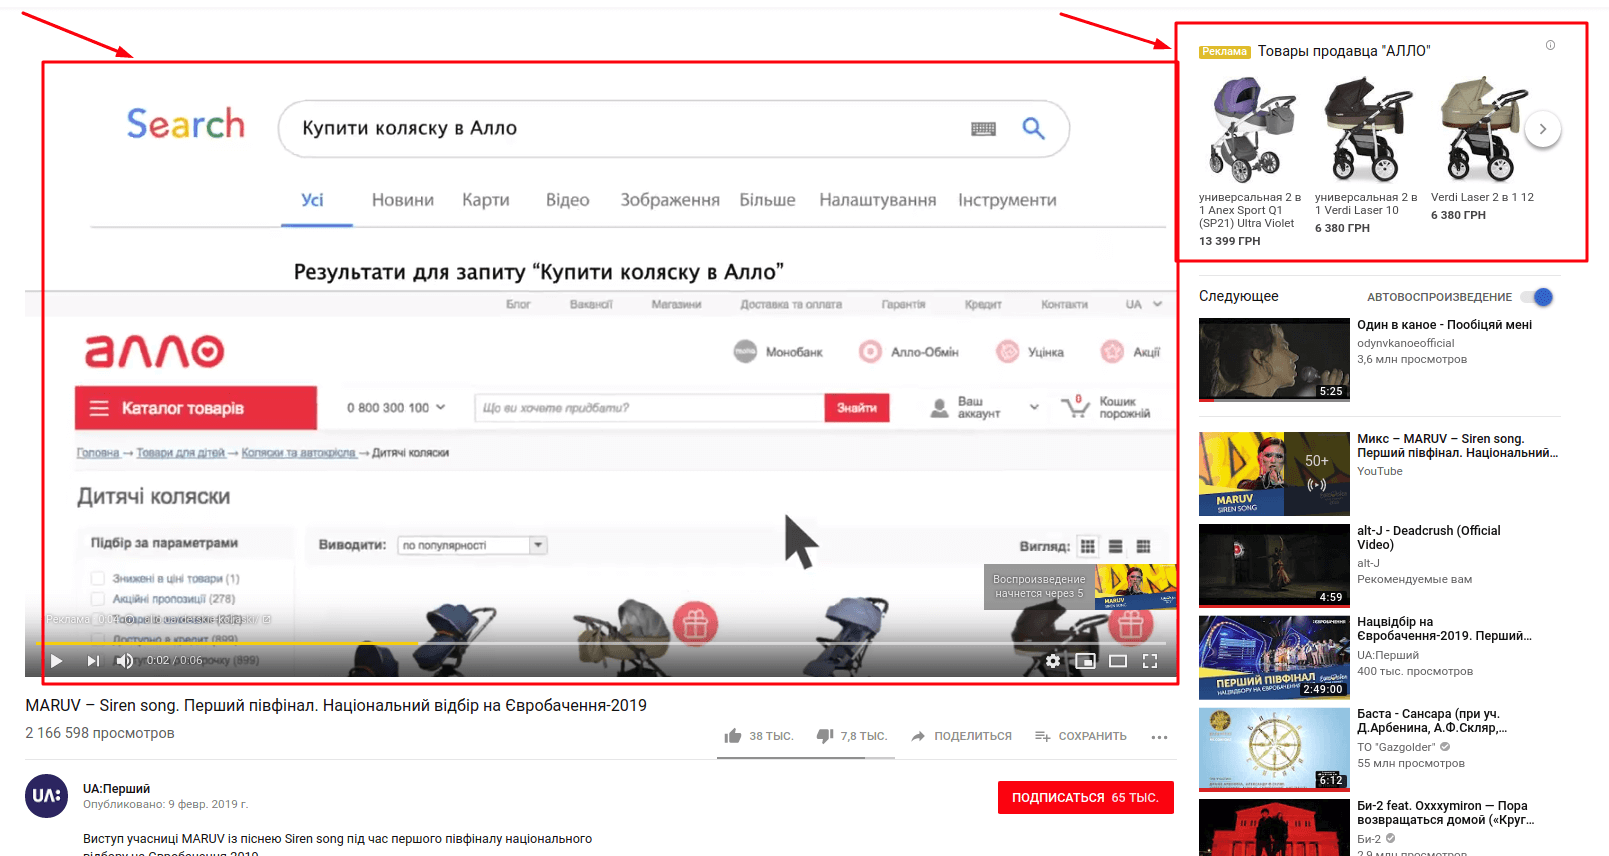 Пример рекламы в Youtube